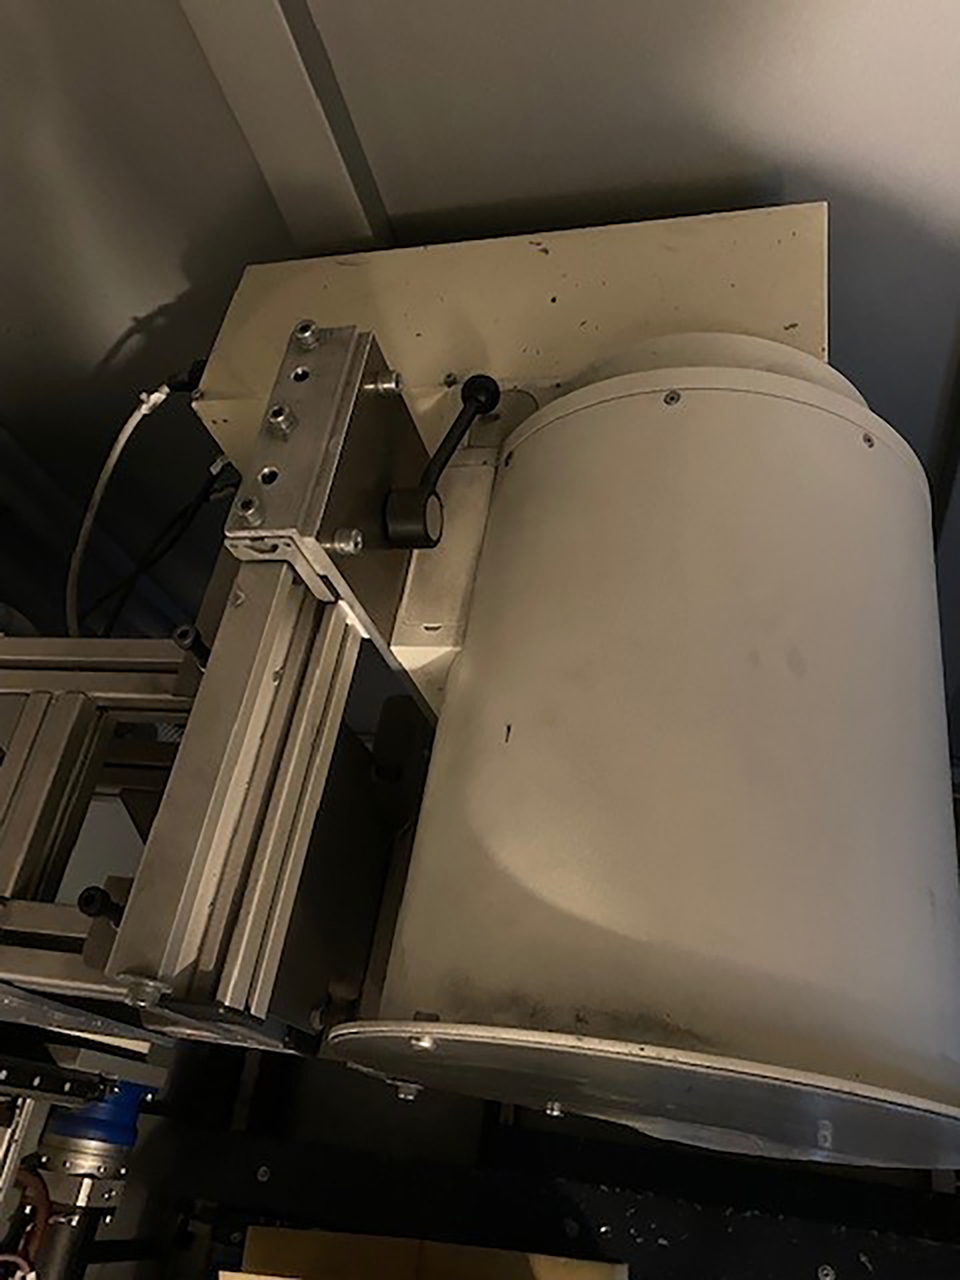 Kompaktowy system rentgenowski Seifert X Cube ZU2214, używany